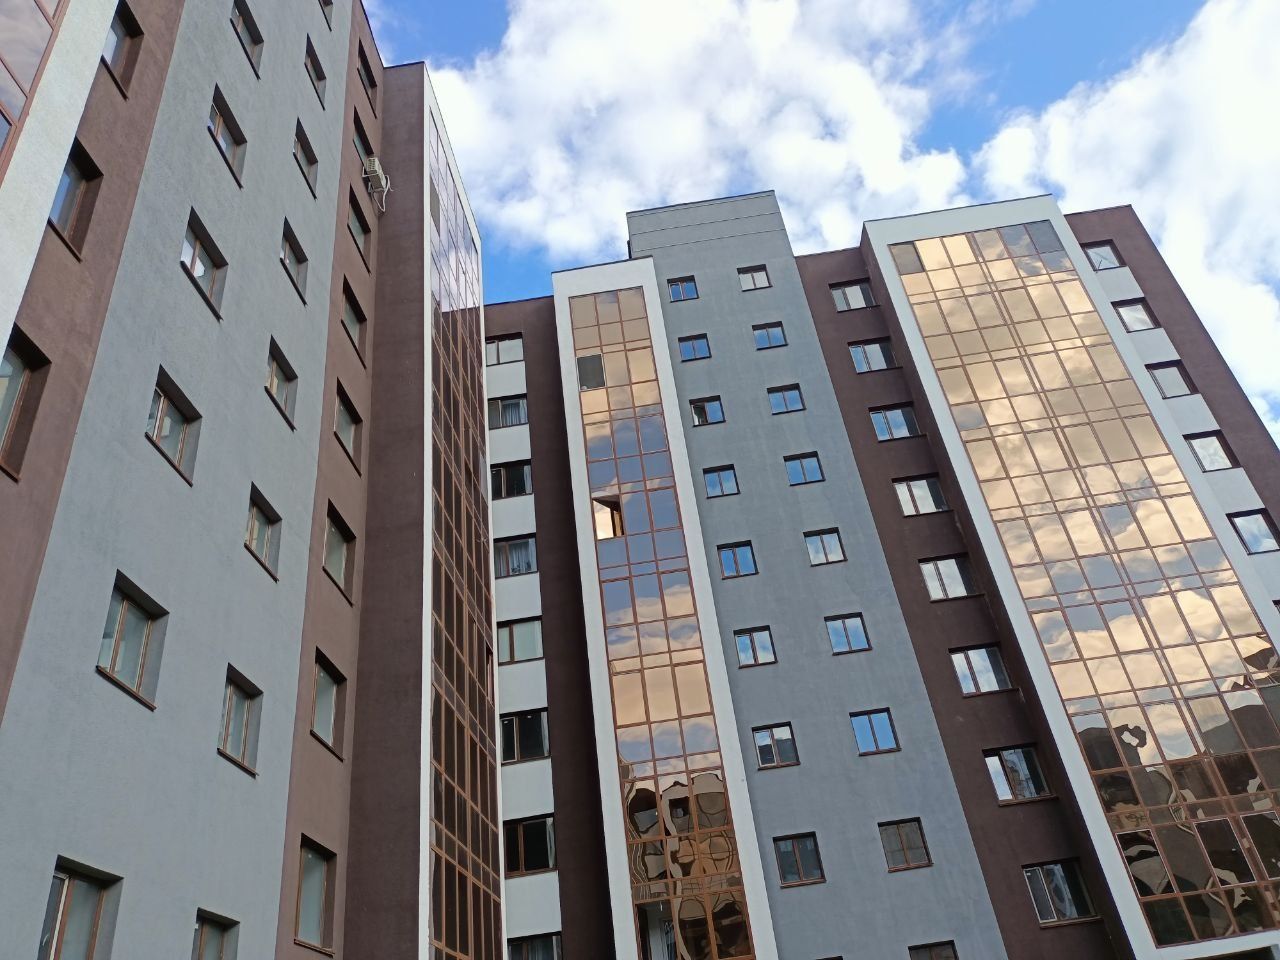 Продается однокомнатная квартира в новом жилом микрорайоне Мендыкара